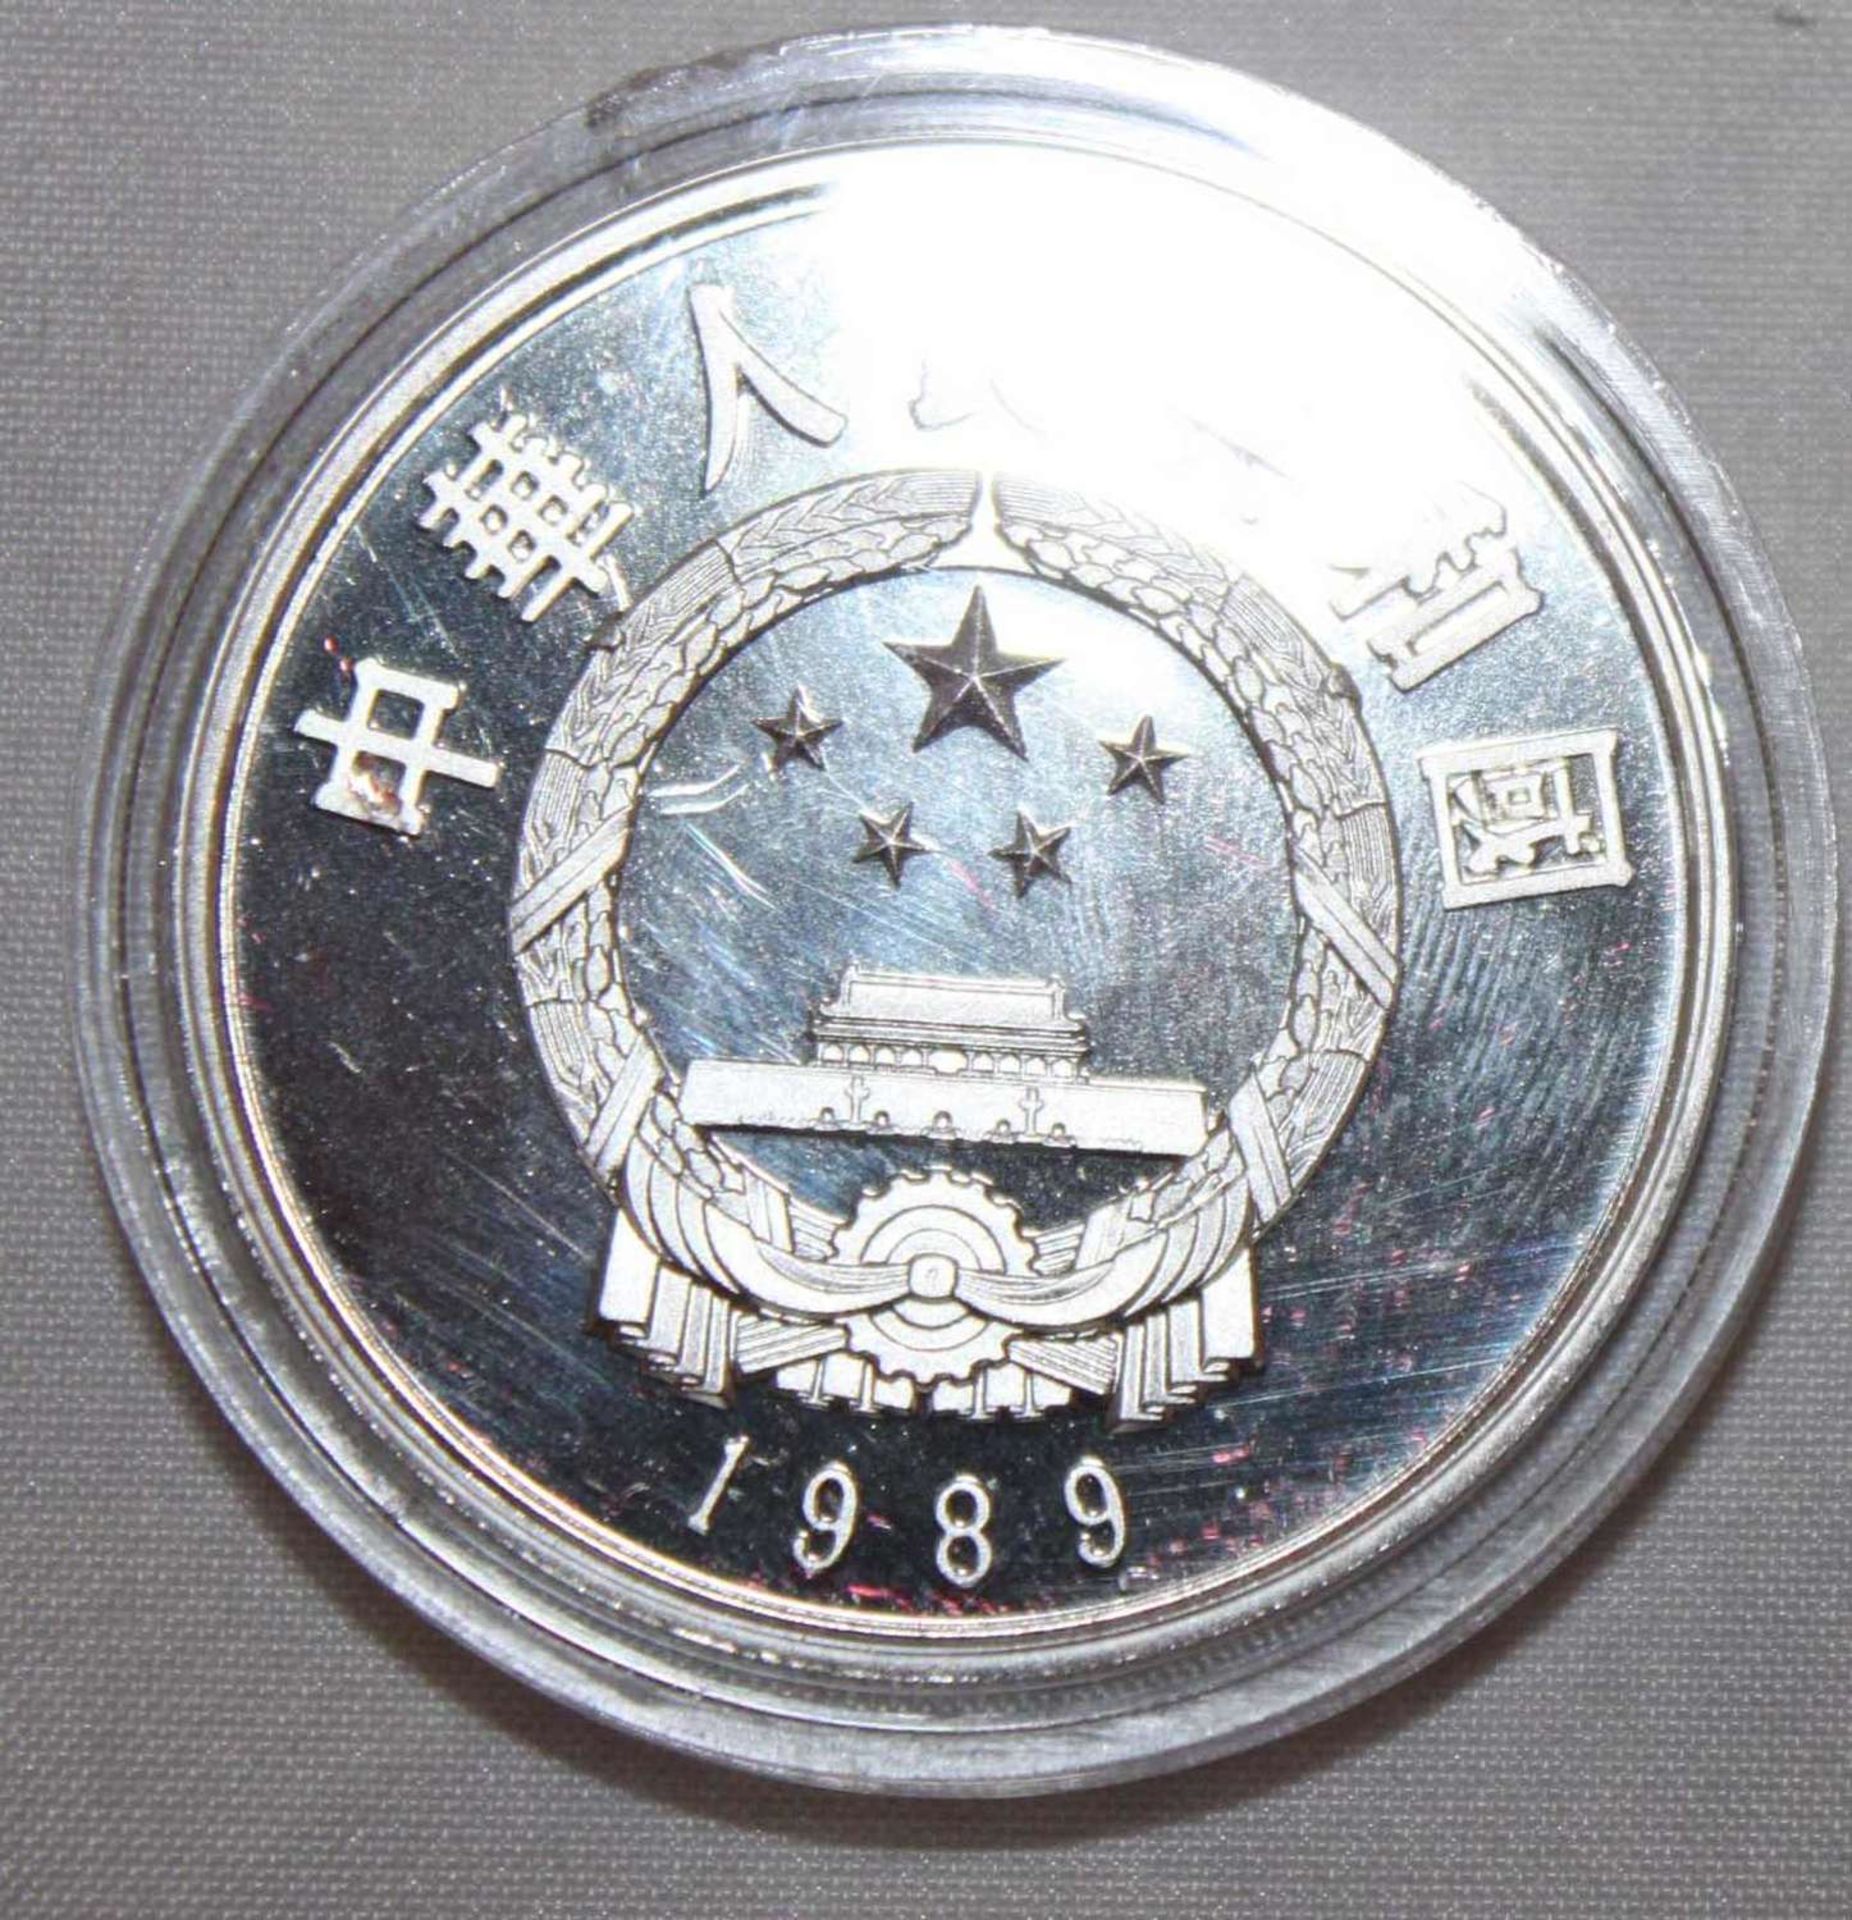 China 1989, 5 Yuan - Silbermünze "Kublai Khan". Silber 900. Gewicht: 22,2 gr.. In Kapsel. Erhaltung: - Bild 2 aus 3